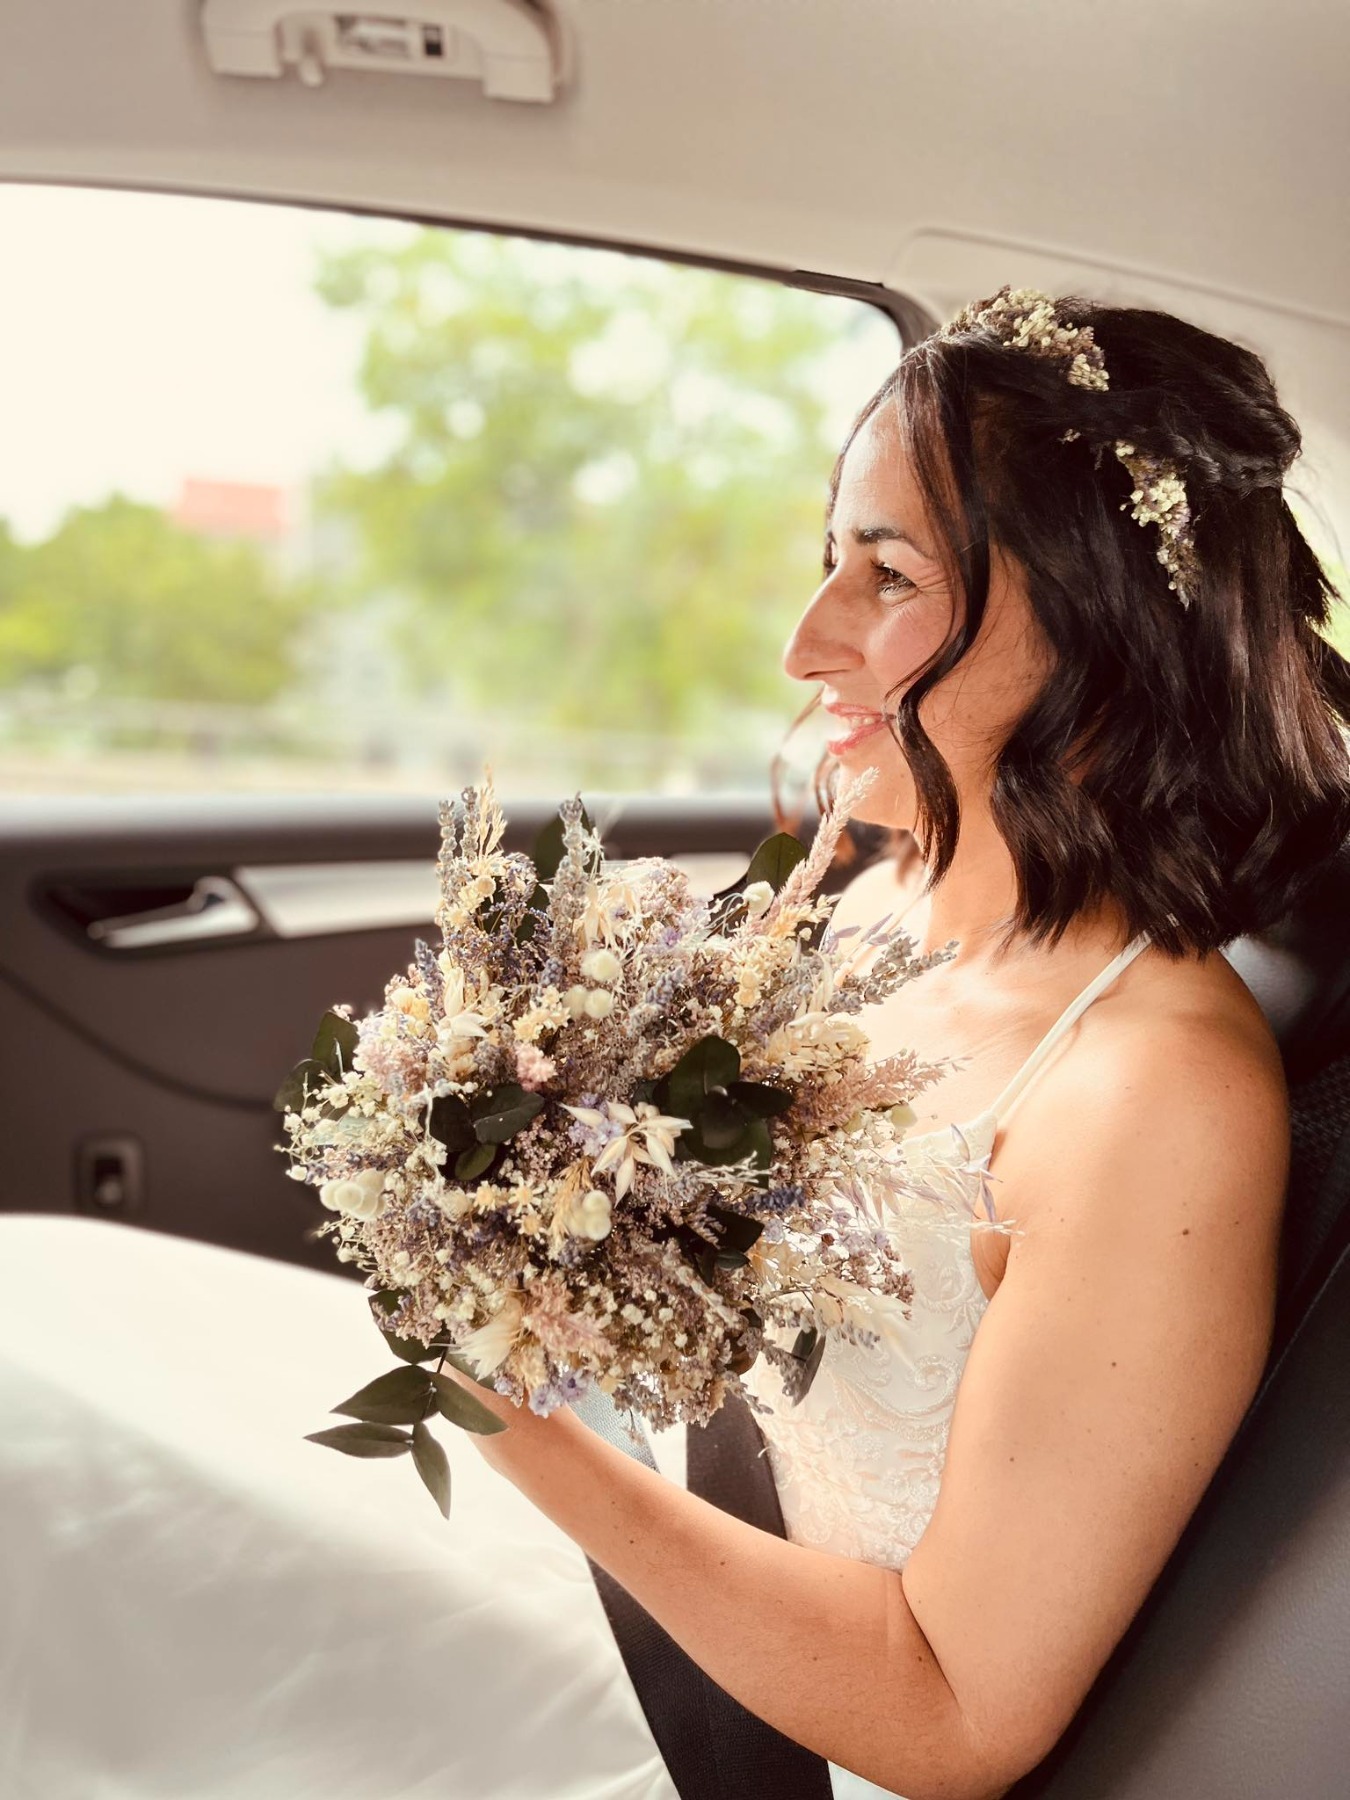 🤍Kundenfoto: Brautstrauß " Melanie" Natürliche Trockenblumen 🤍

